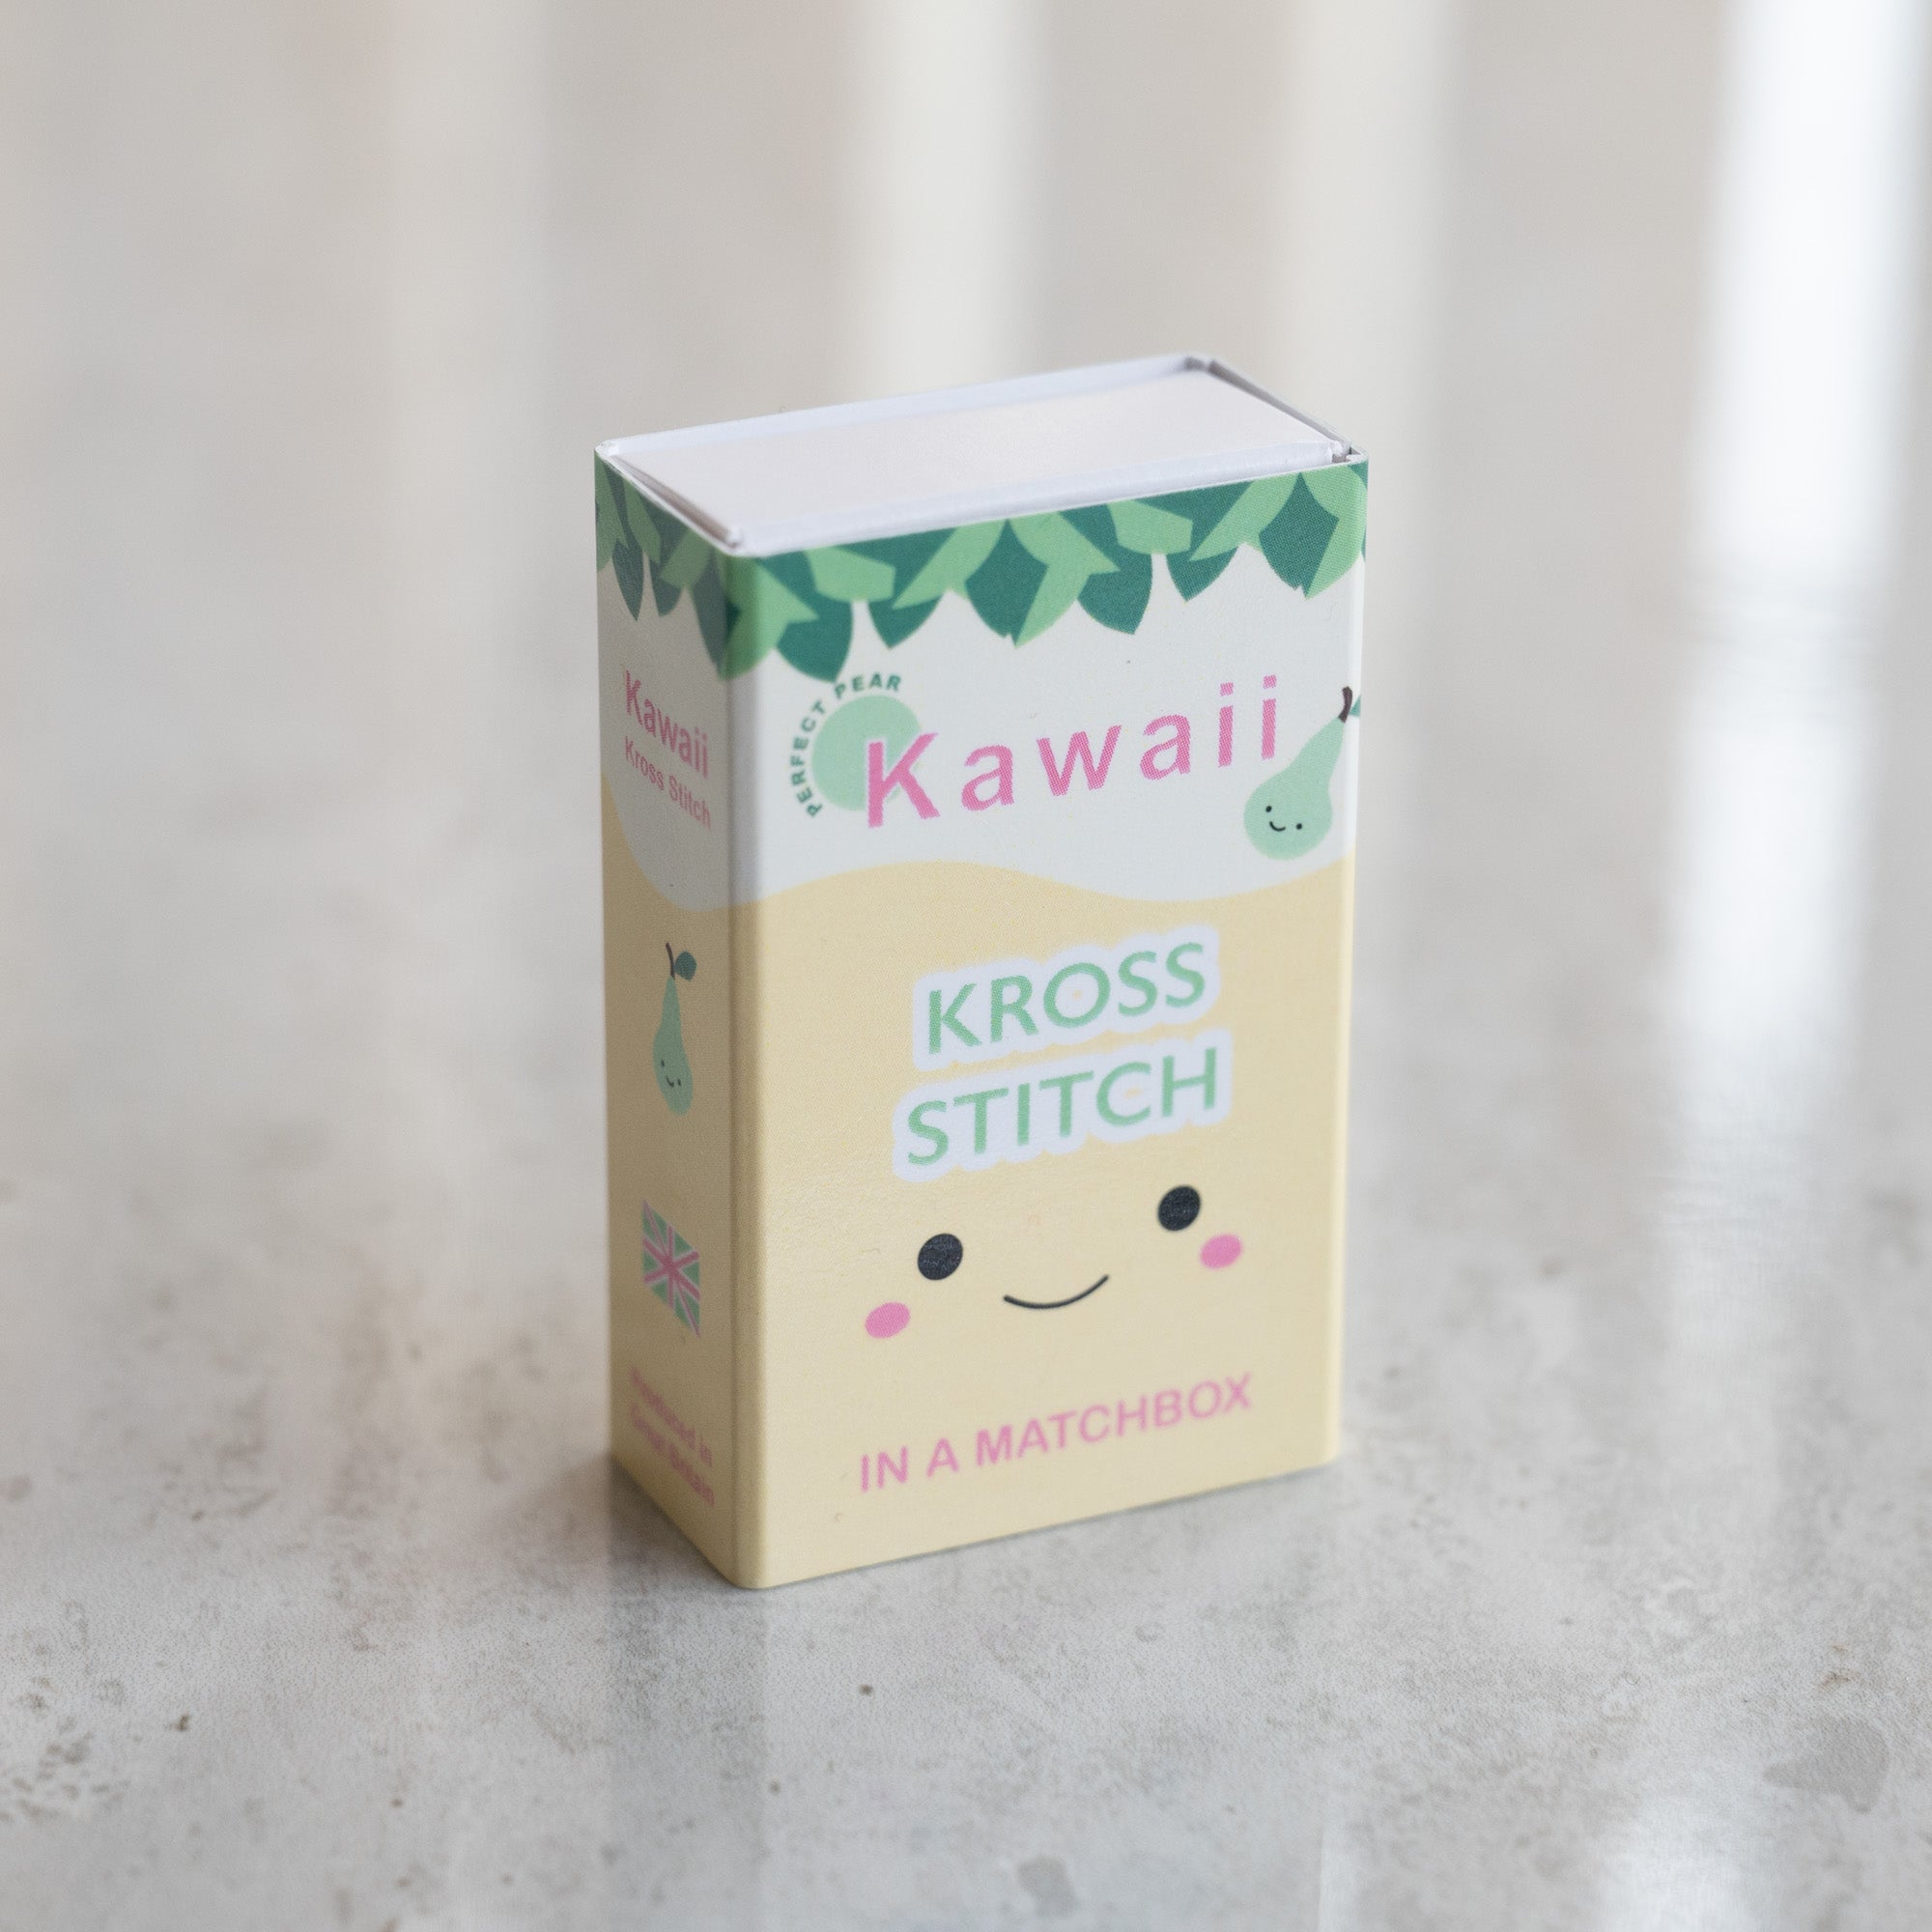 Mini Cross Stitch Kit With Kawaii Pear In A Matchbox